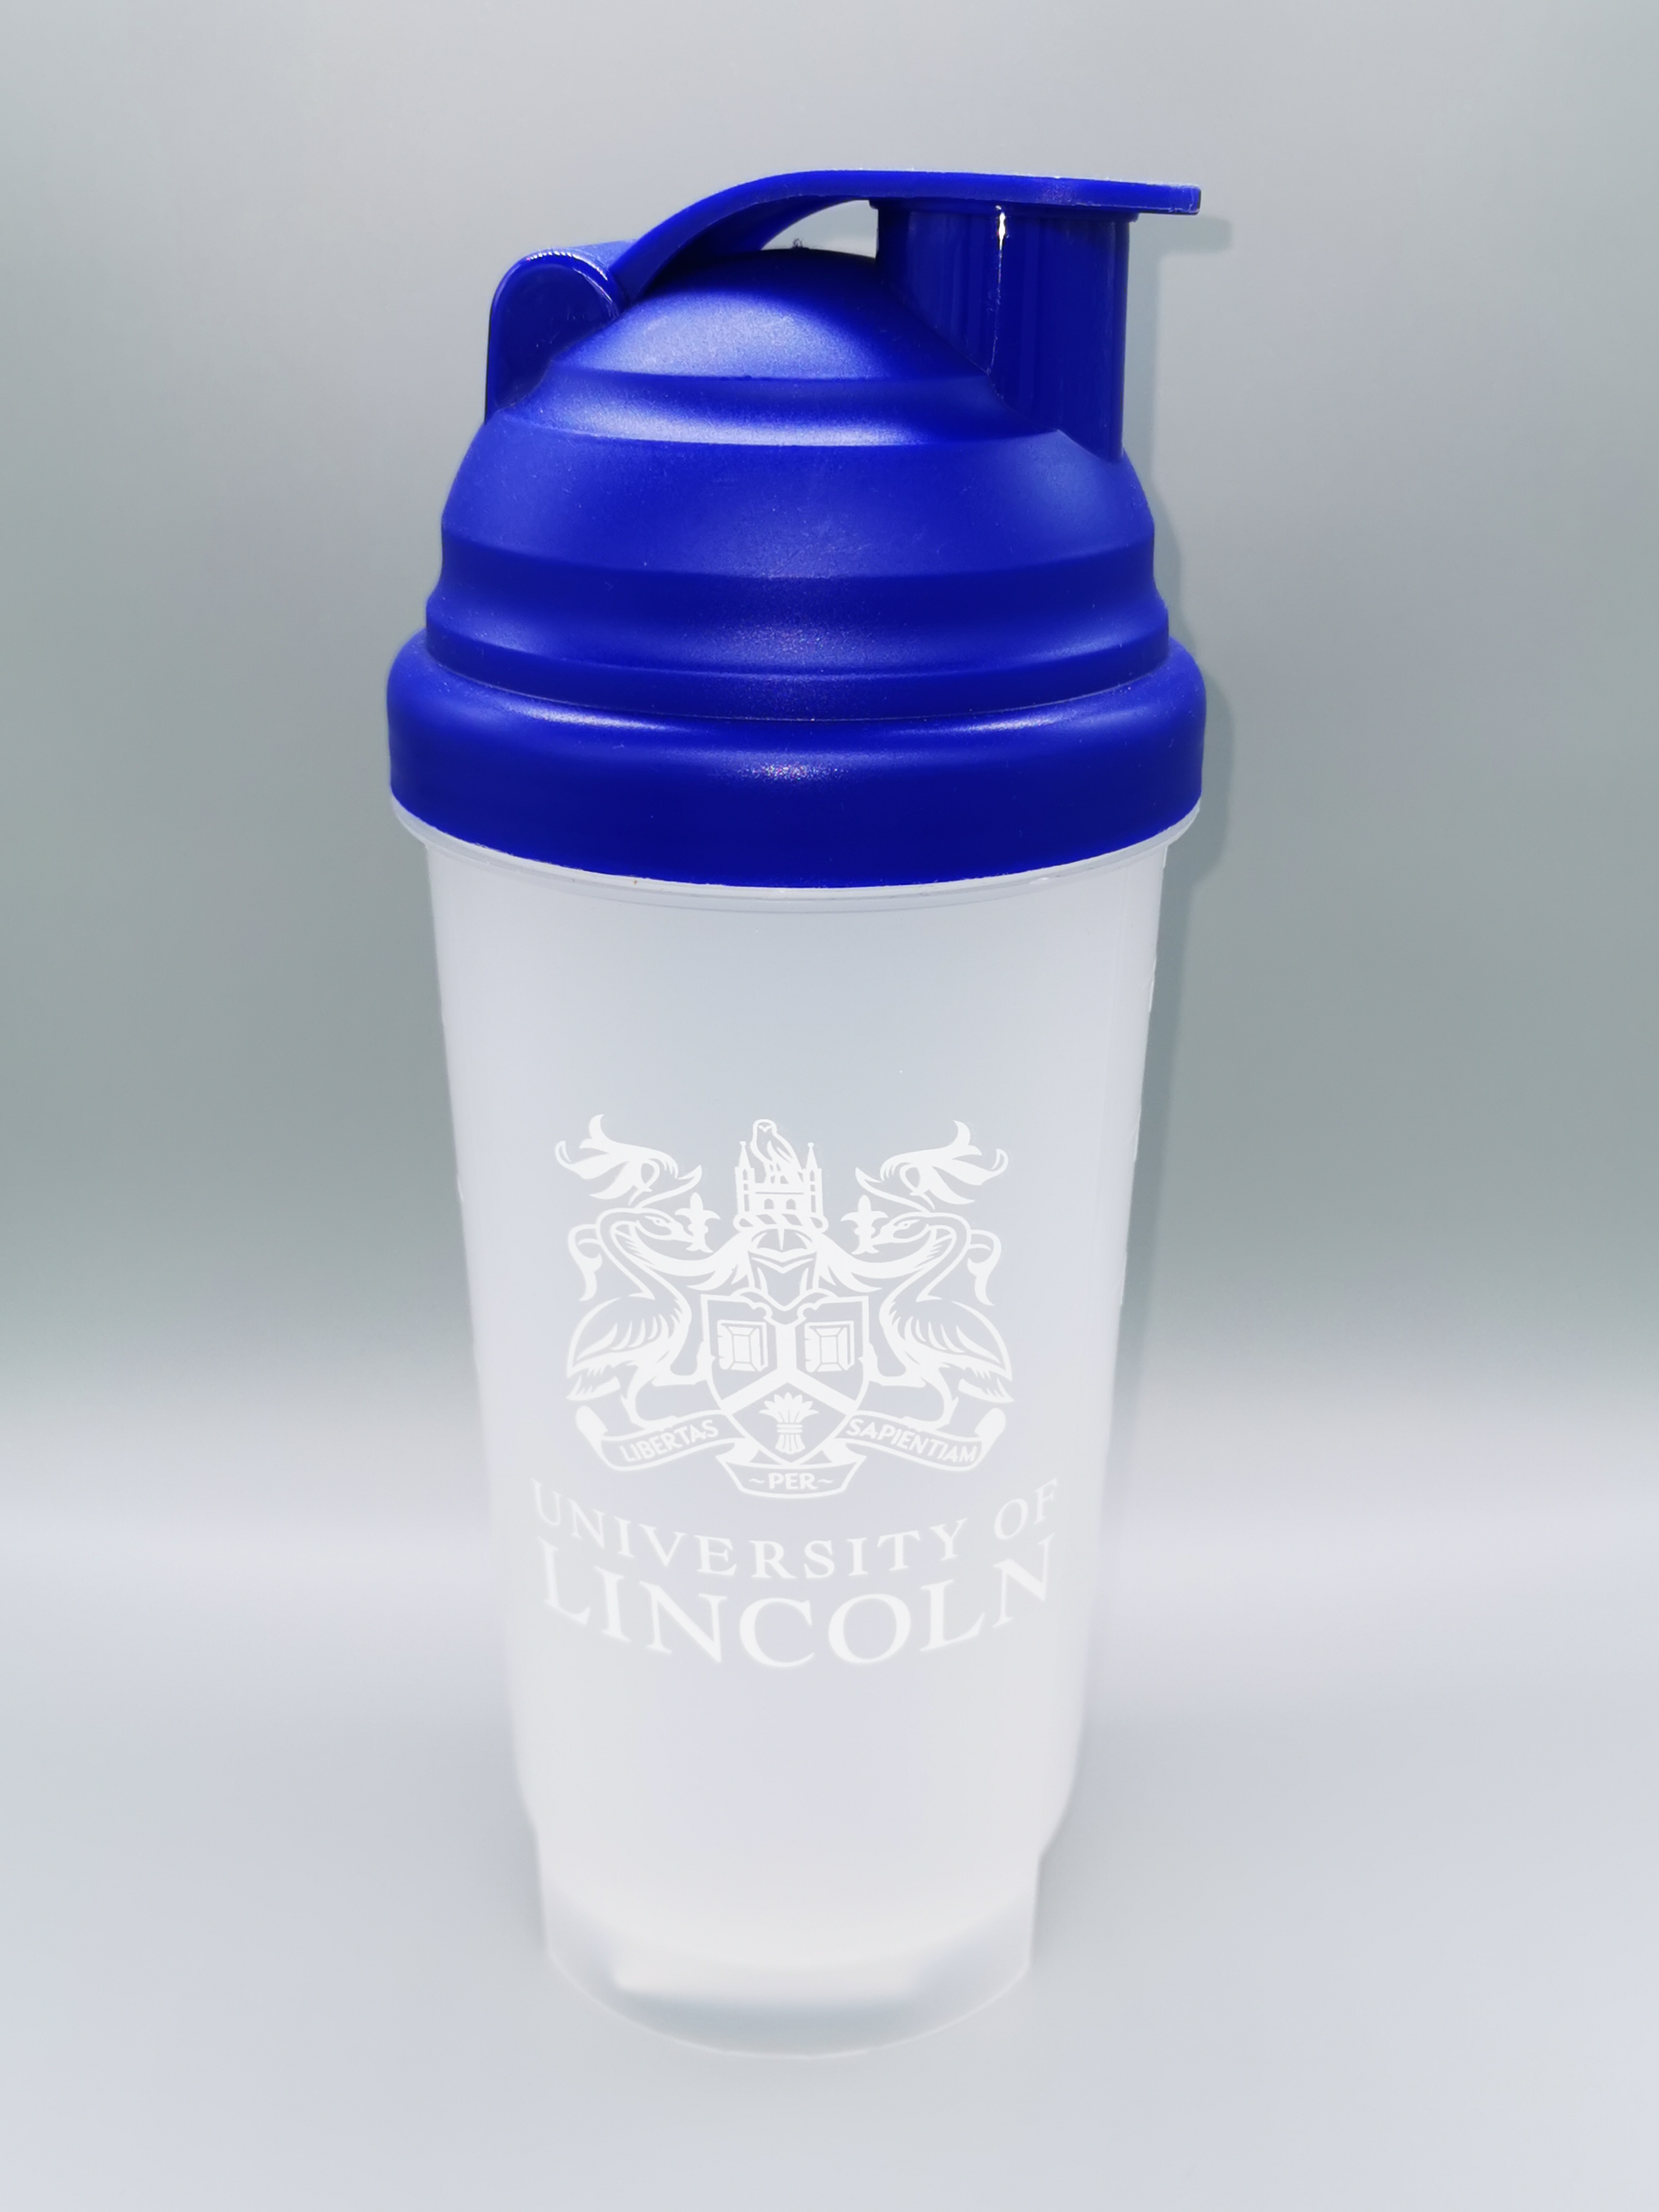 University of Lincoln Protein Shaker Bottle 700ml - £6.99